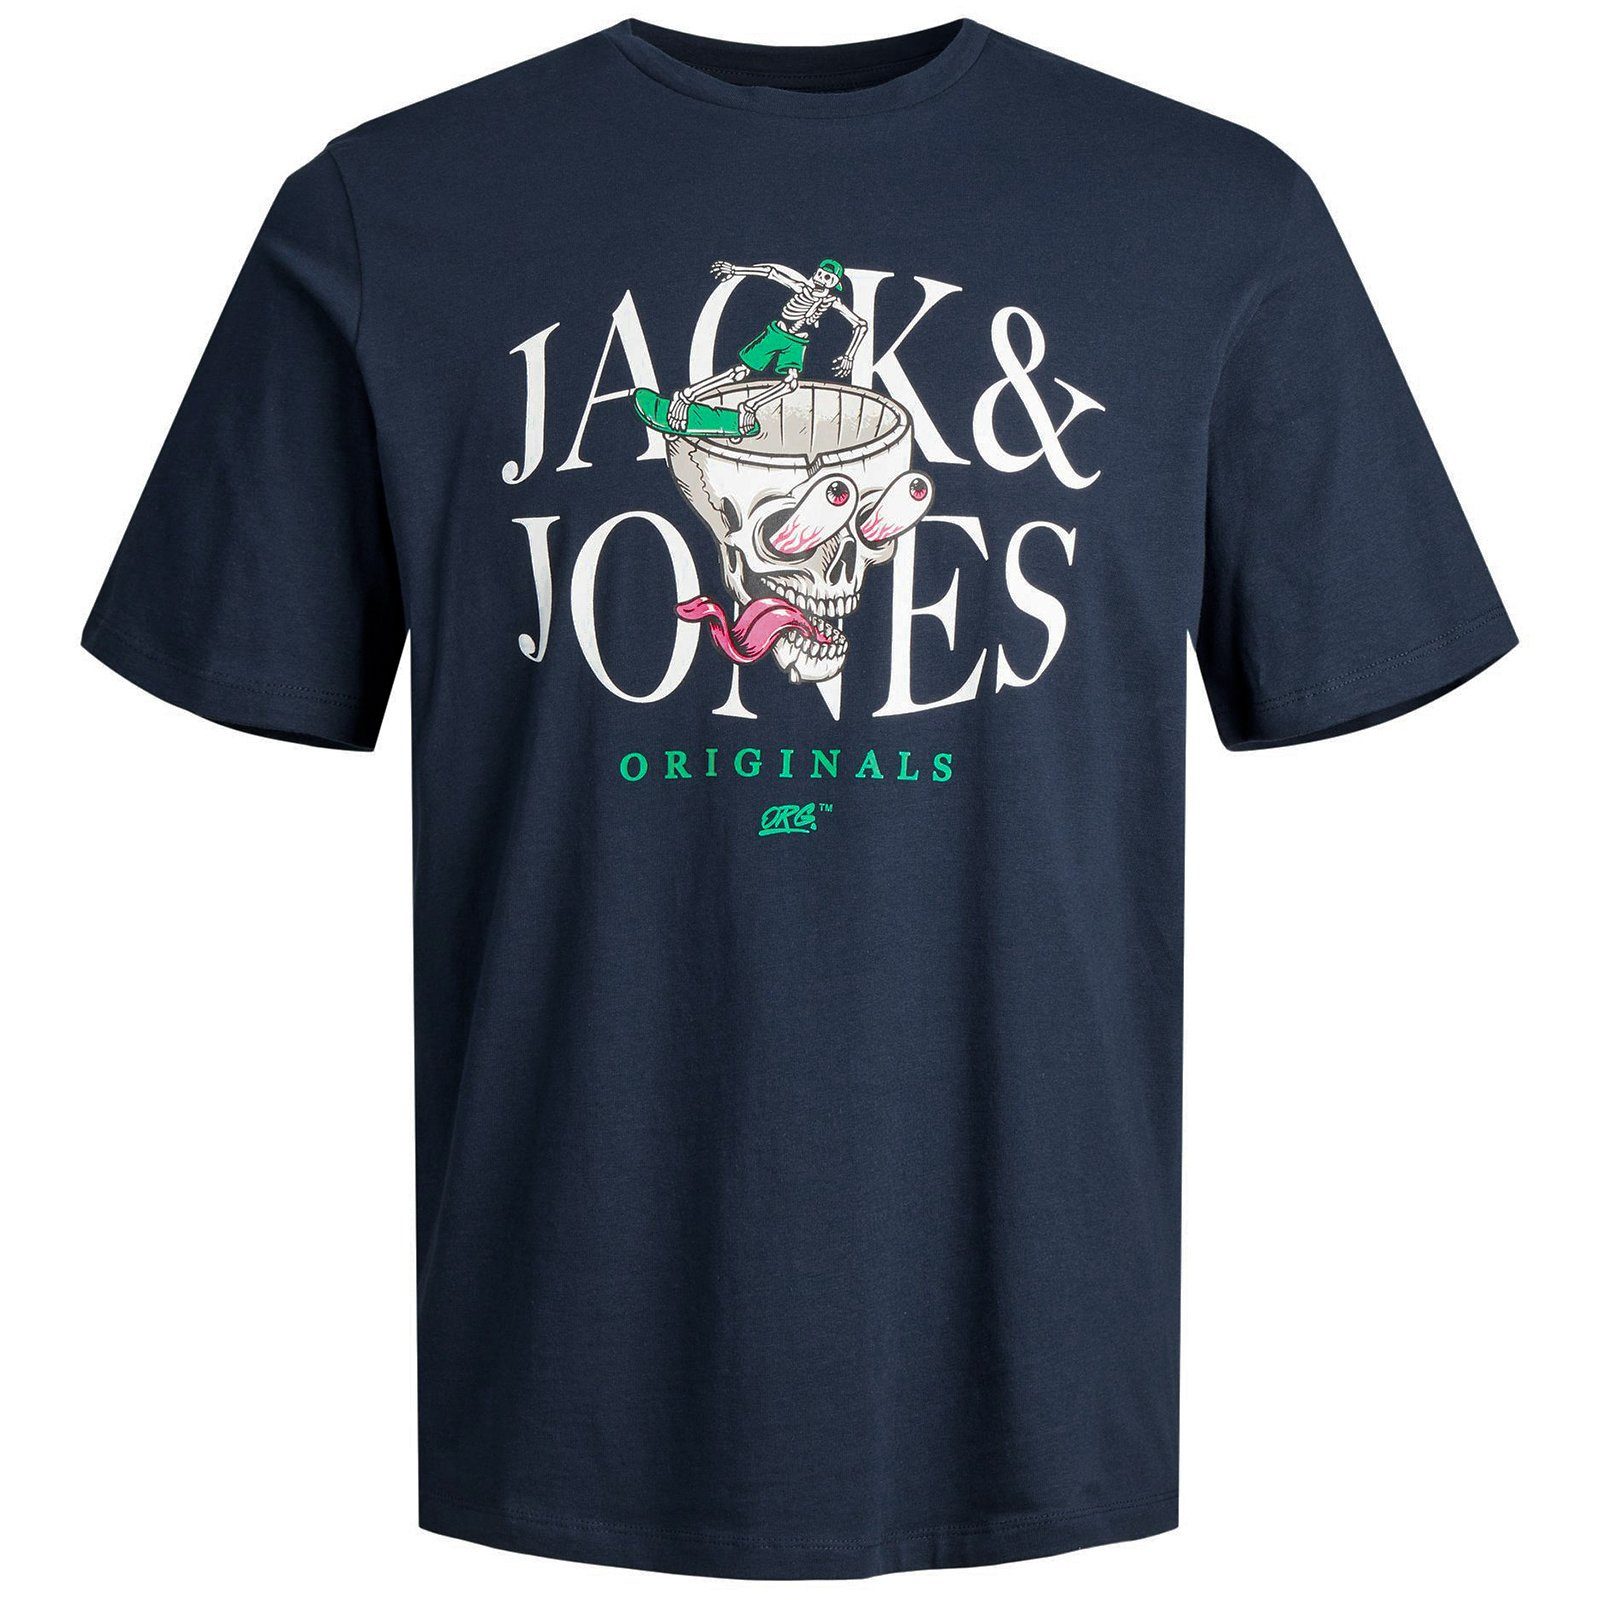 Rundhalsshirt T-Shirt & cooles Jones Jack Herren navy Jack&Jones Totenkopf-Motiv Große Größen